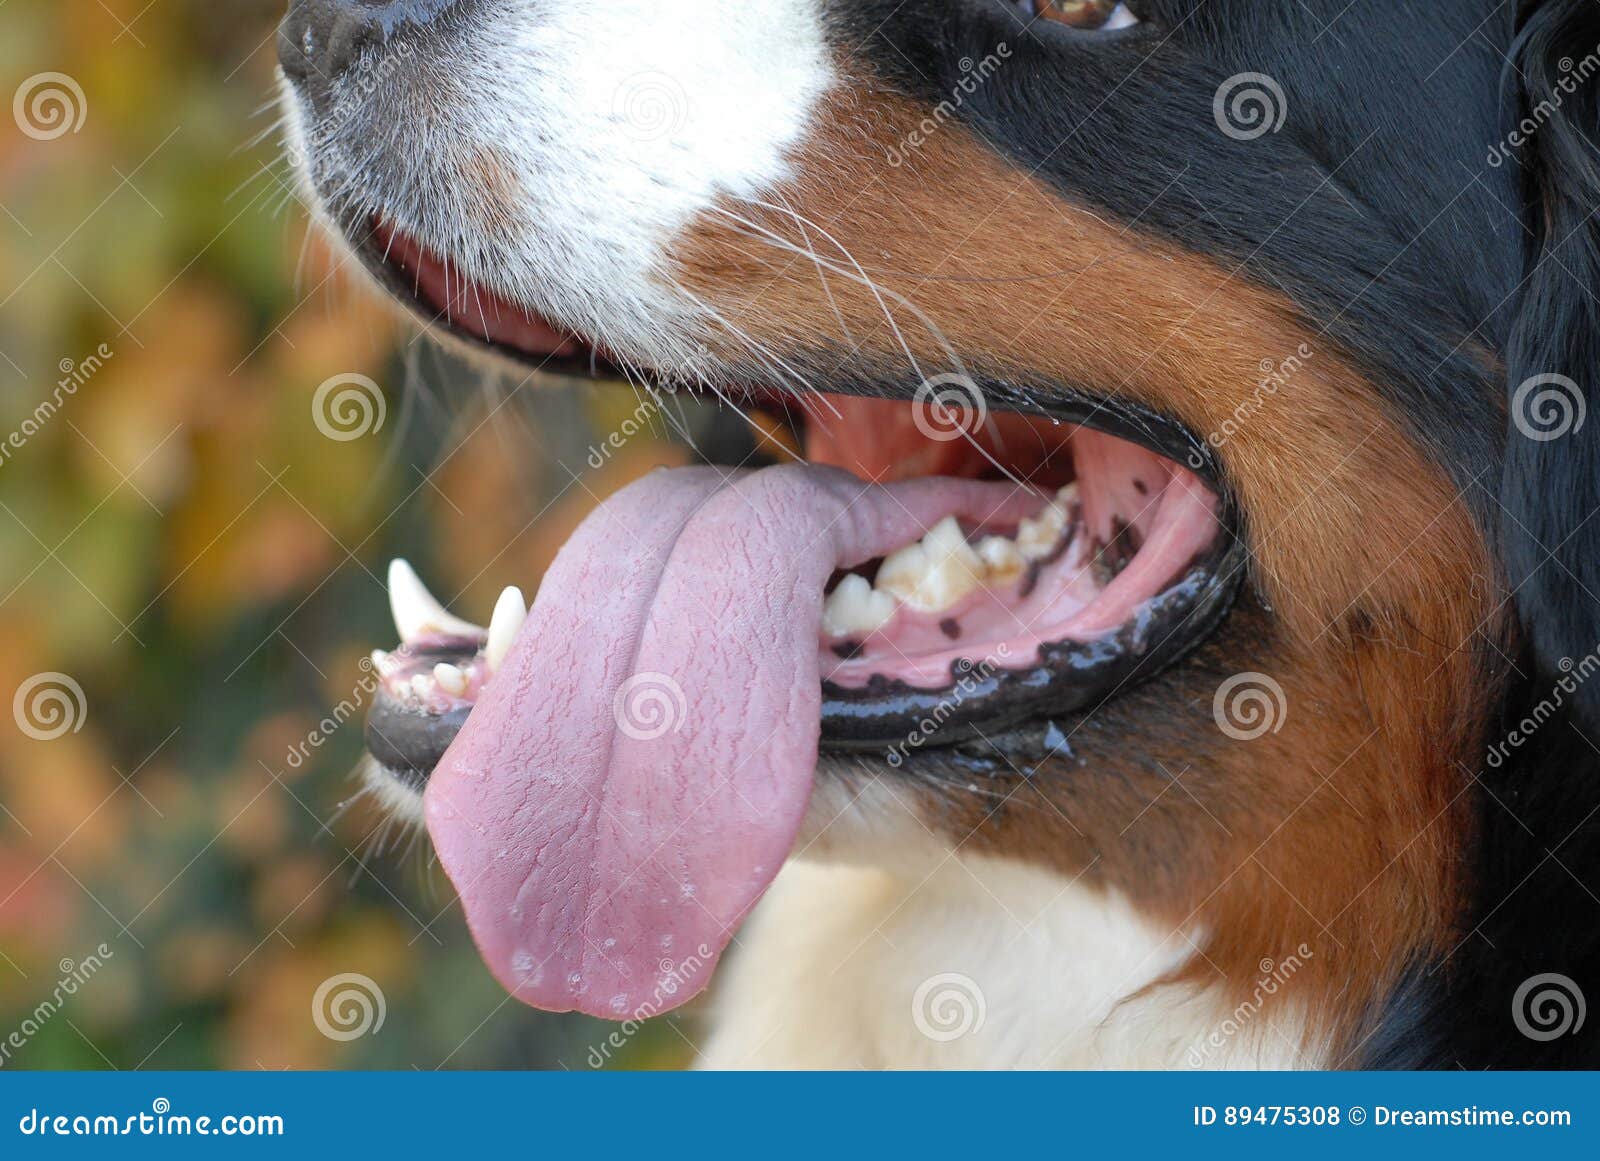 Почему собака часто дышит с открытым ртом. Собака с высунутым языком. Собака дышит с открытым ртом. Собака дышит высунув язык. Иллюстрации щенок с высунутым языком.